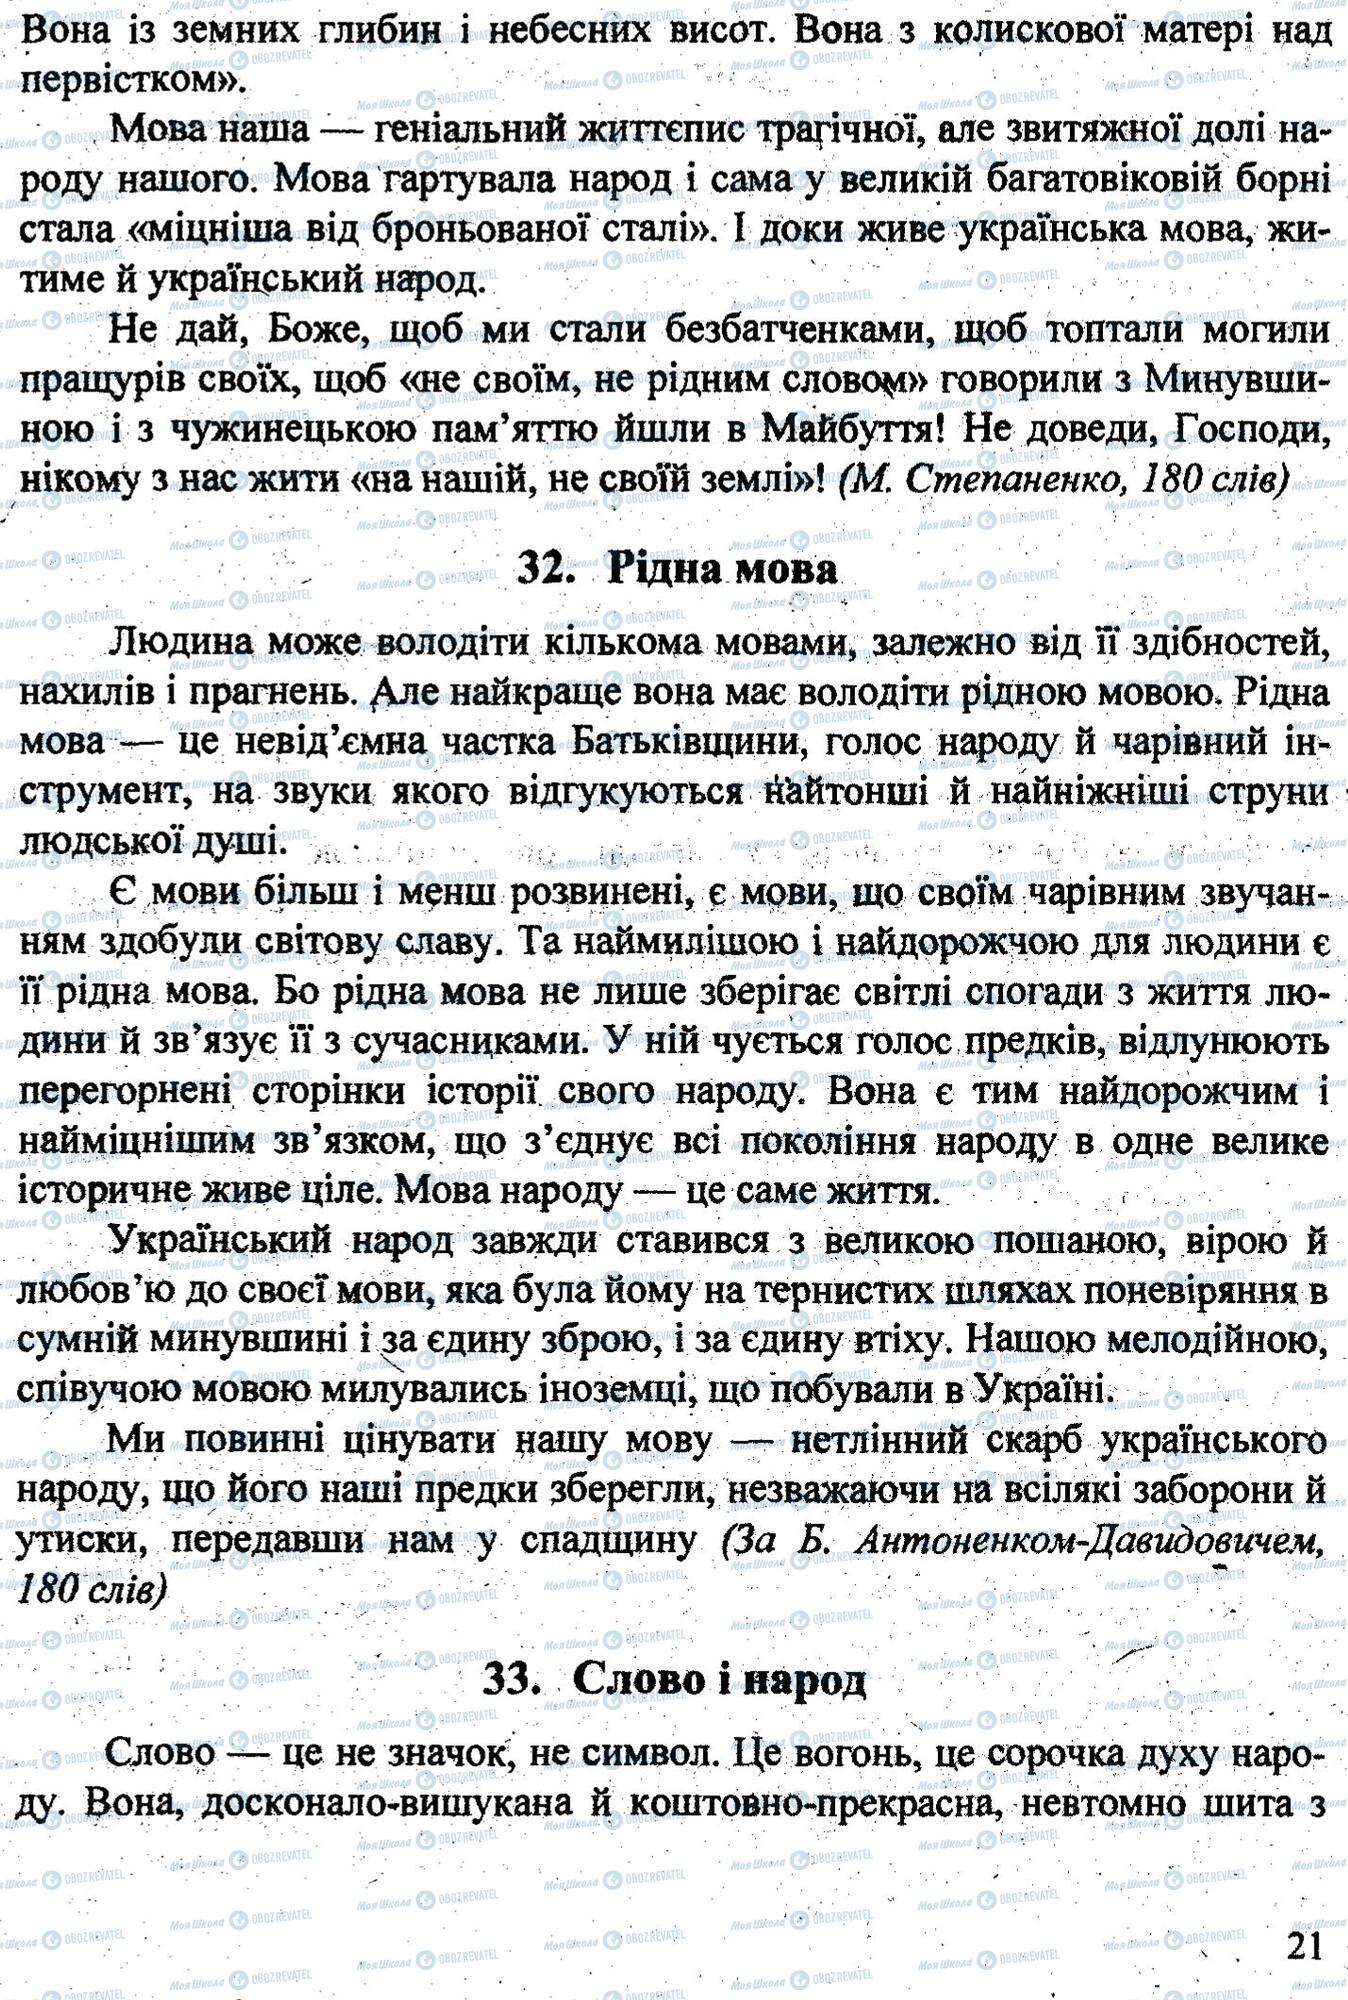 ДПА Укр мова 9 класс страница 0020